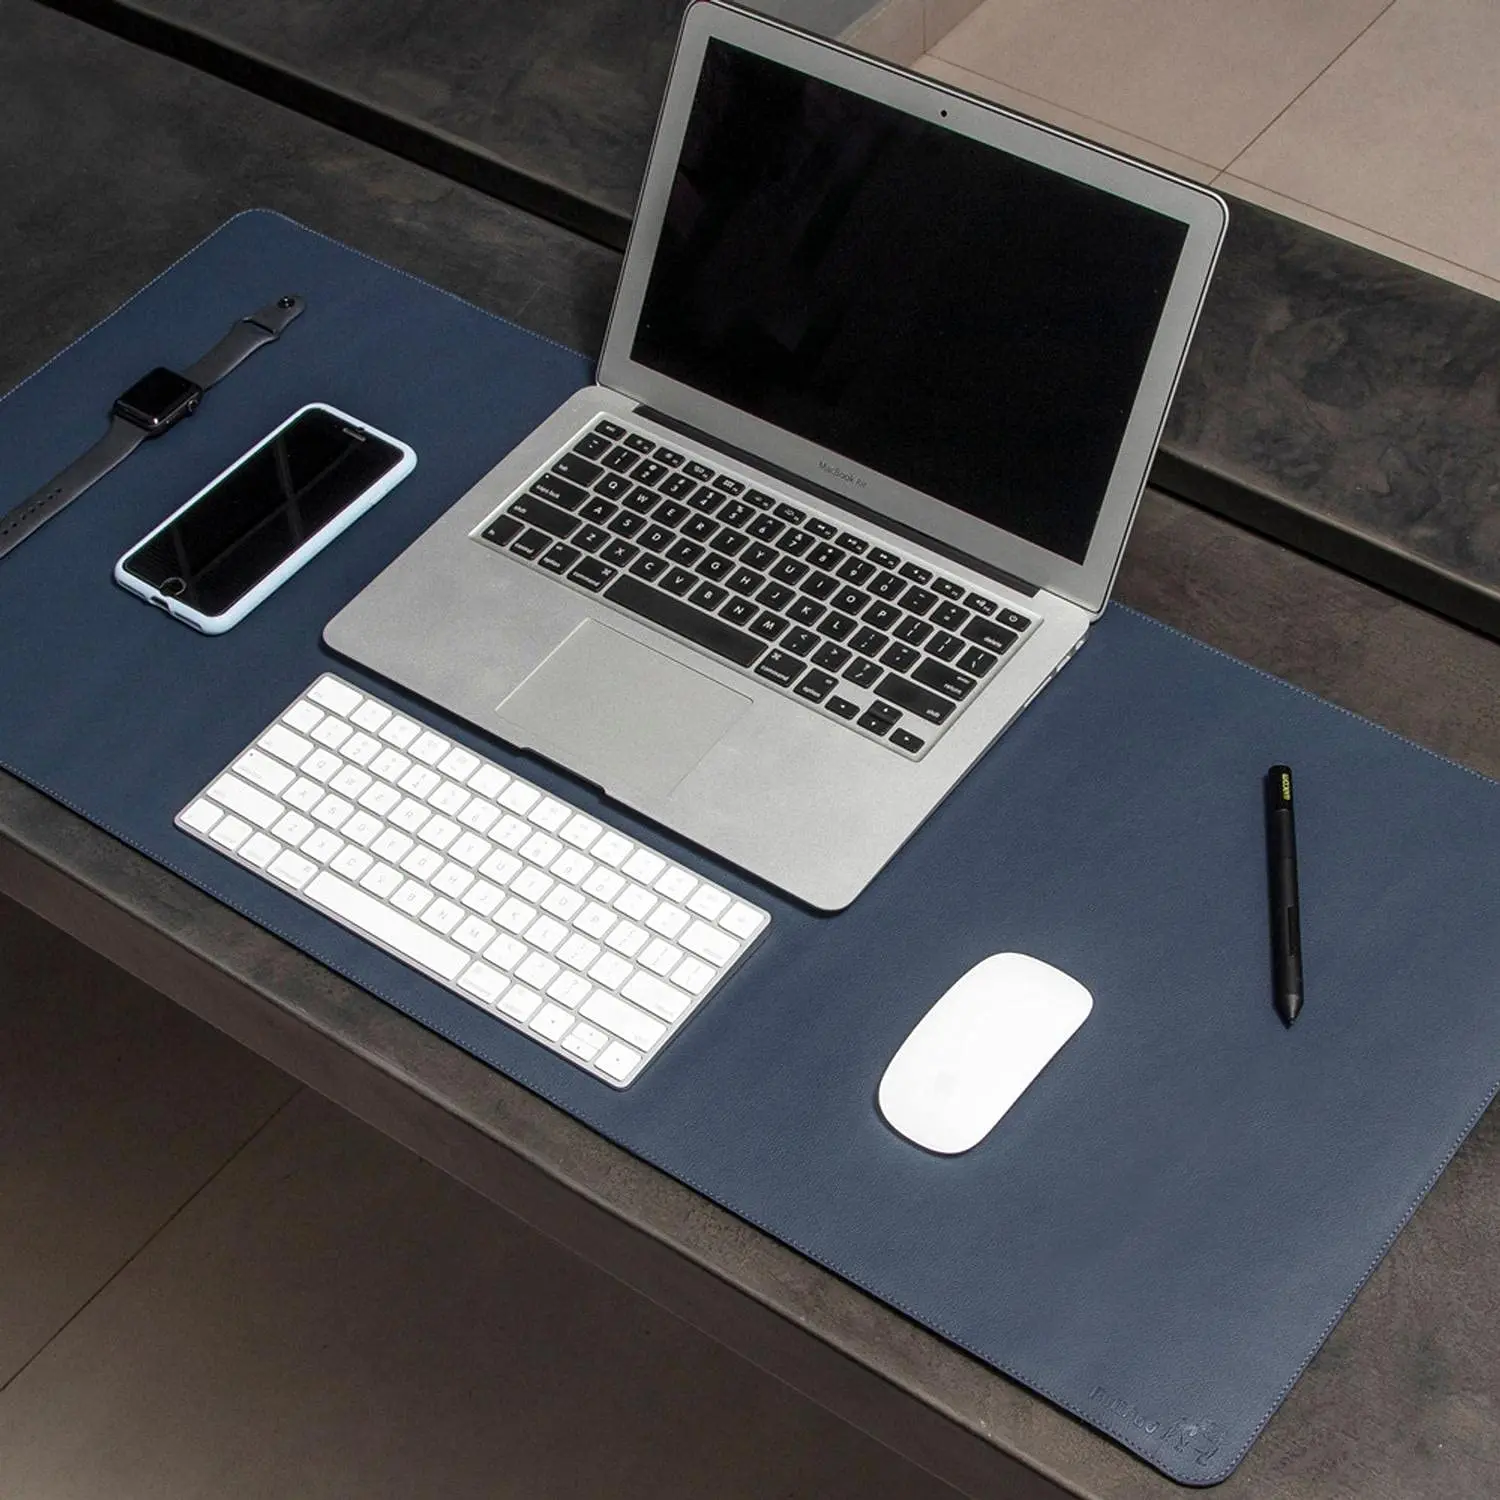 

Mouse Pad Desk Pad Max L Couro Ecologico 70x30cm Design Minimalista (Midnight Blue)